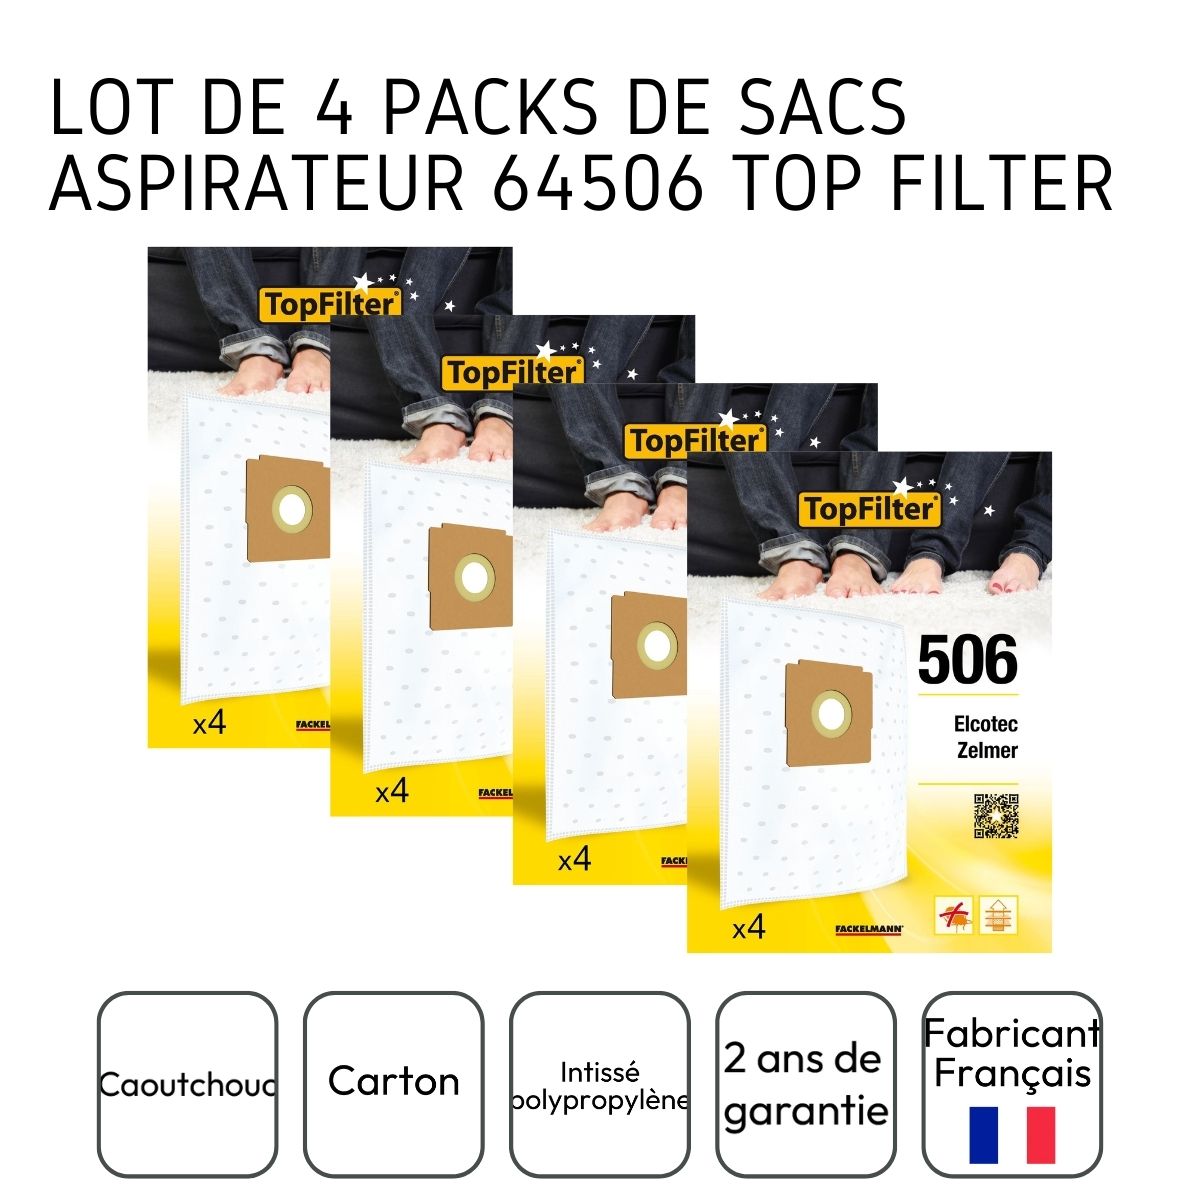 Lot de 4 packs de 4 sacs aspirateur pour Zelmer et Elcotec TopFilter Premium